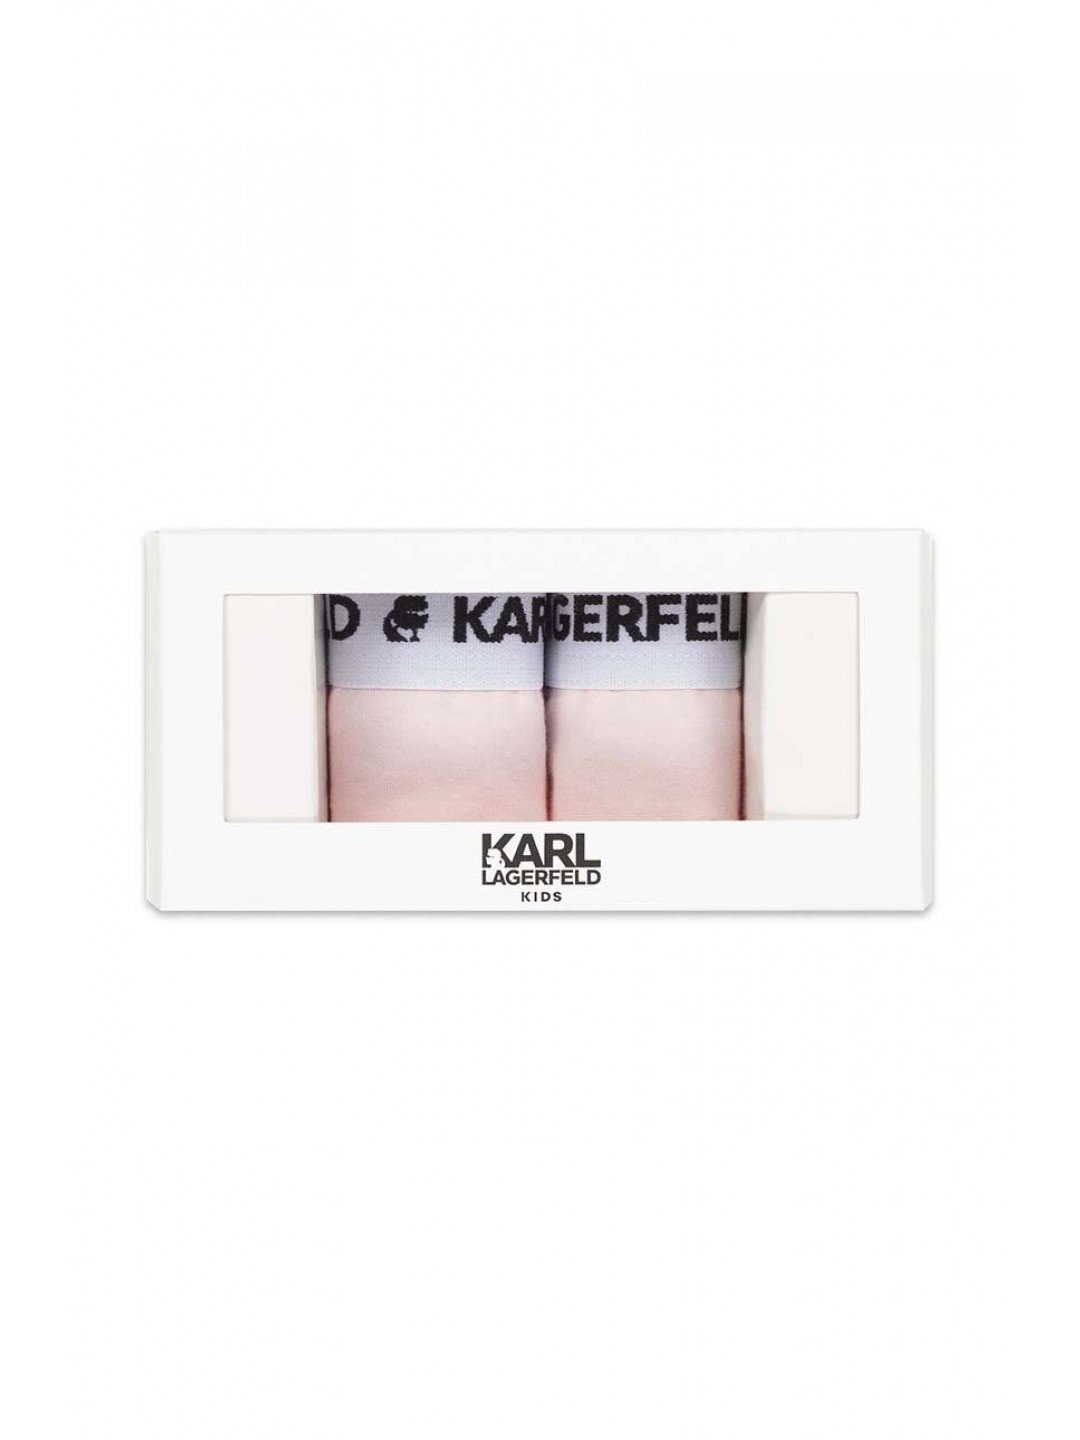 Dětské kalhotky Karl Lagerfeld 2-pack růžová barva